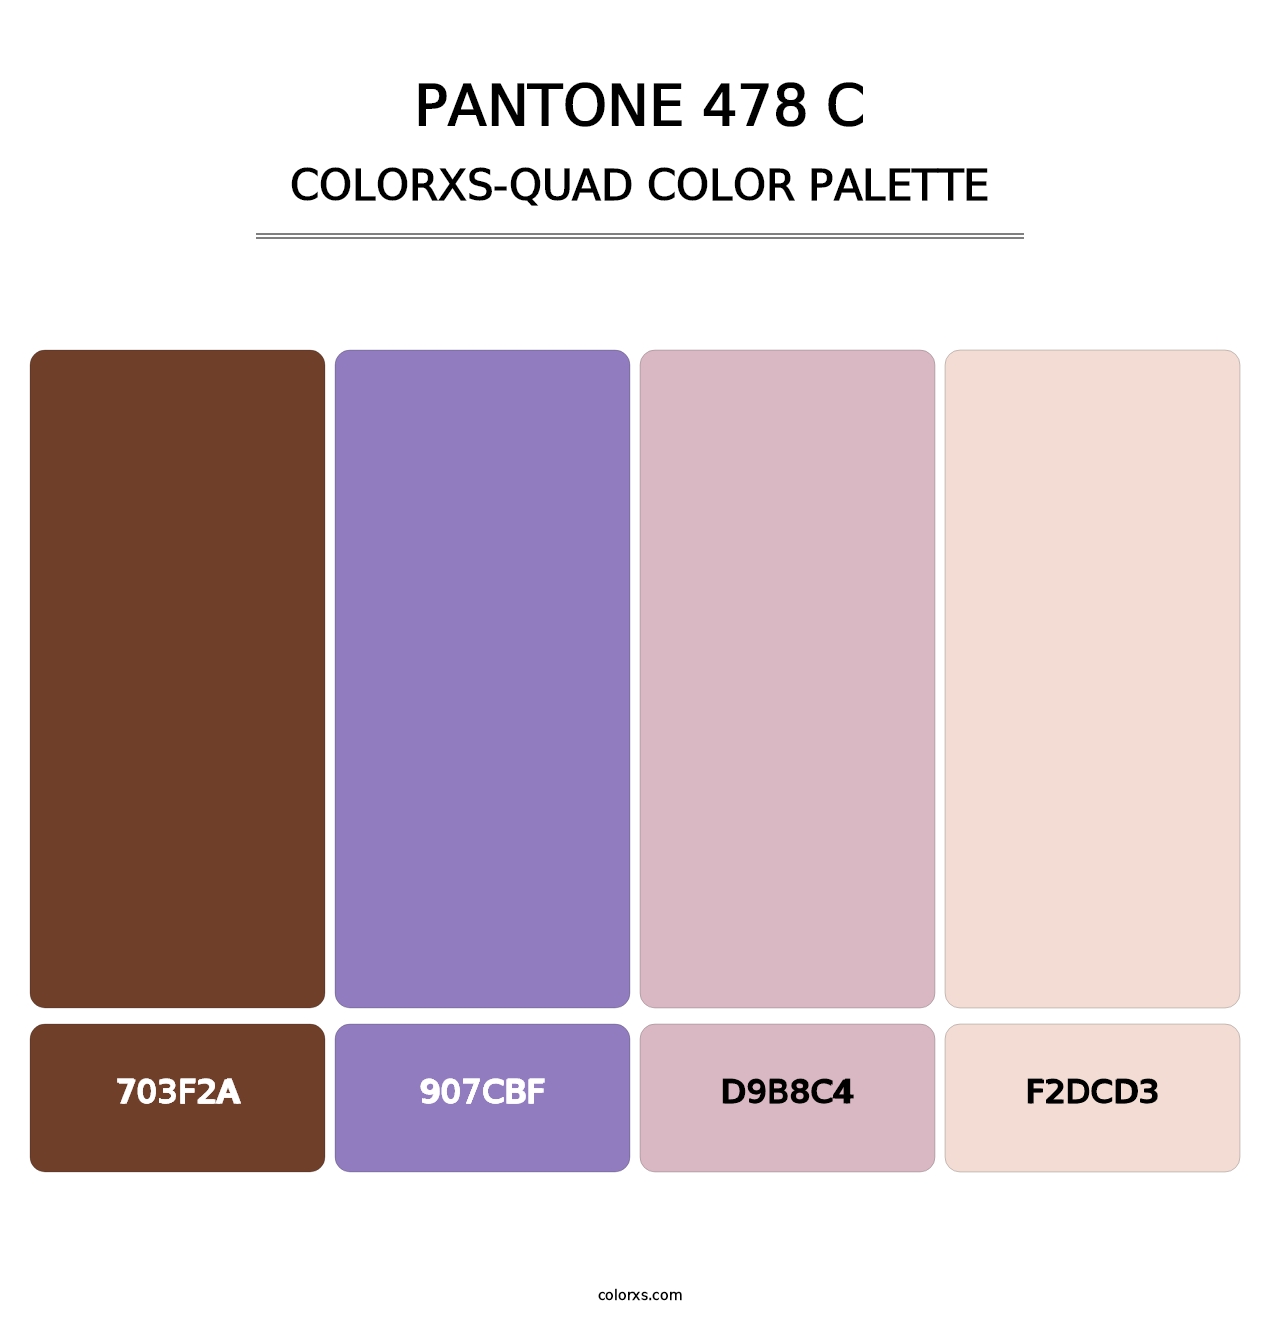 PANTONE 478 C - Colorxs Quad Palette